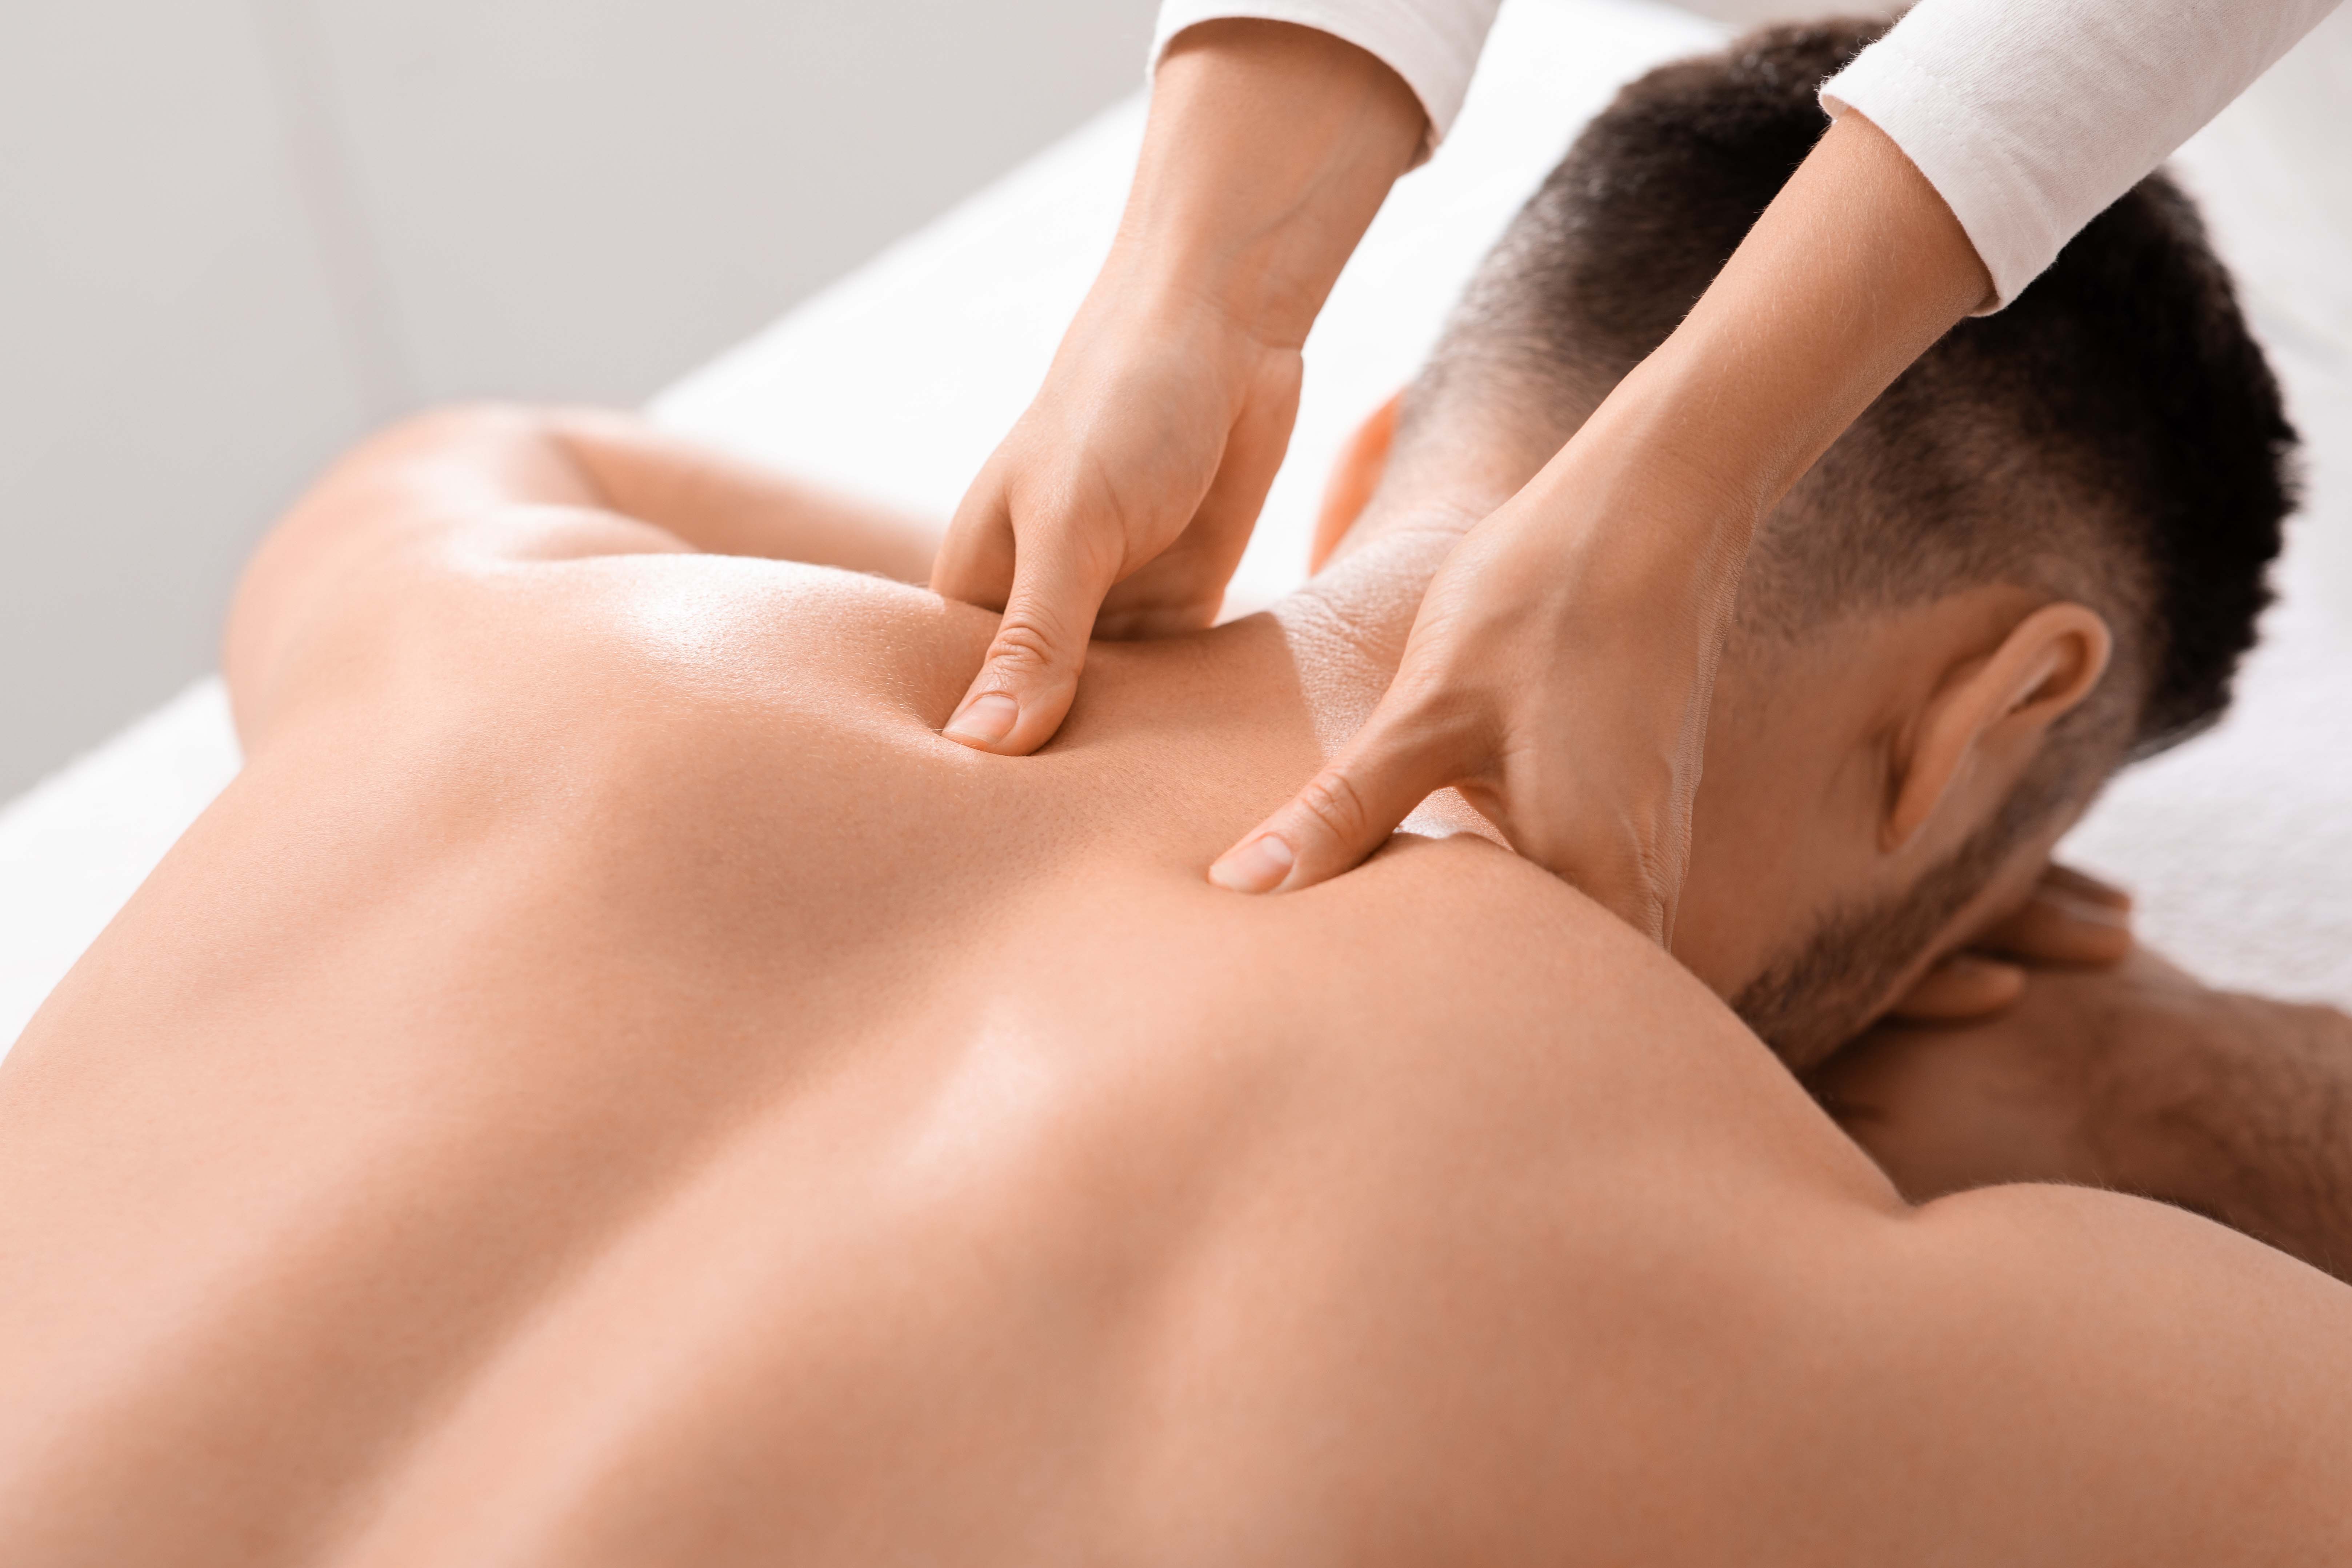 Head massage, neck massage, shoulder massage, 